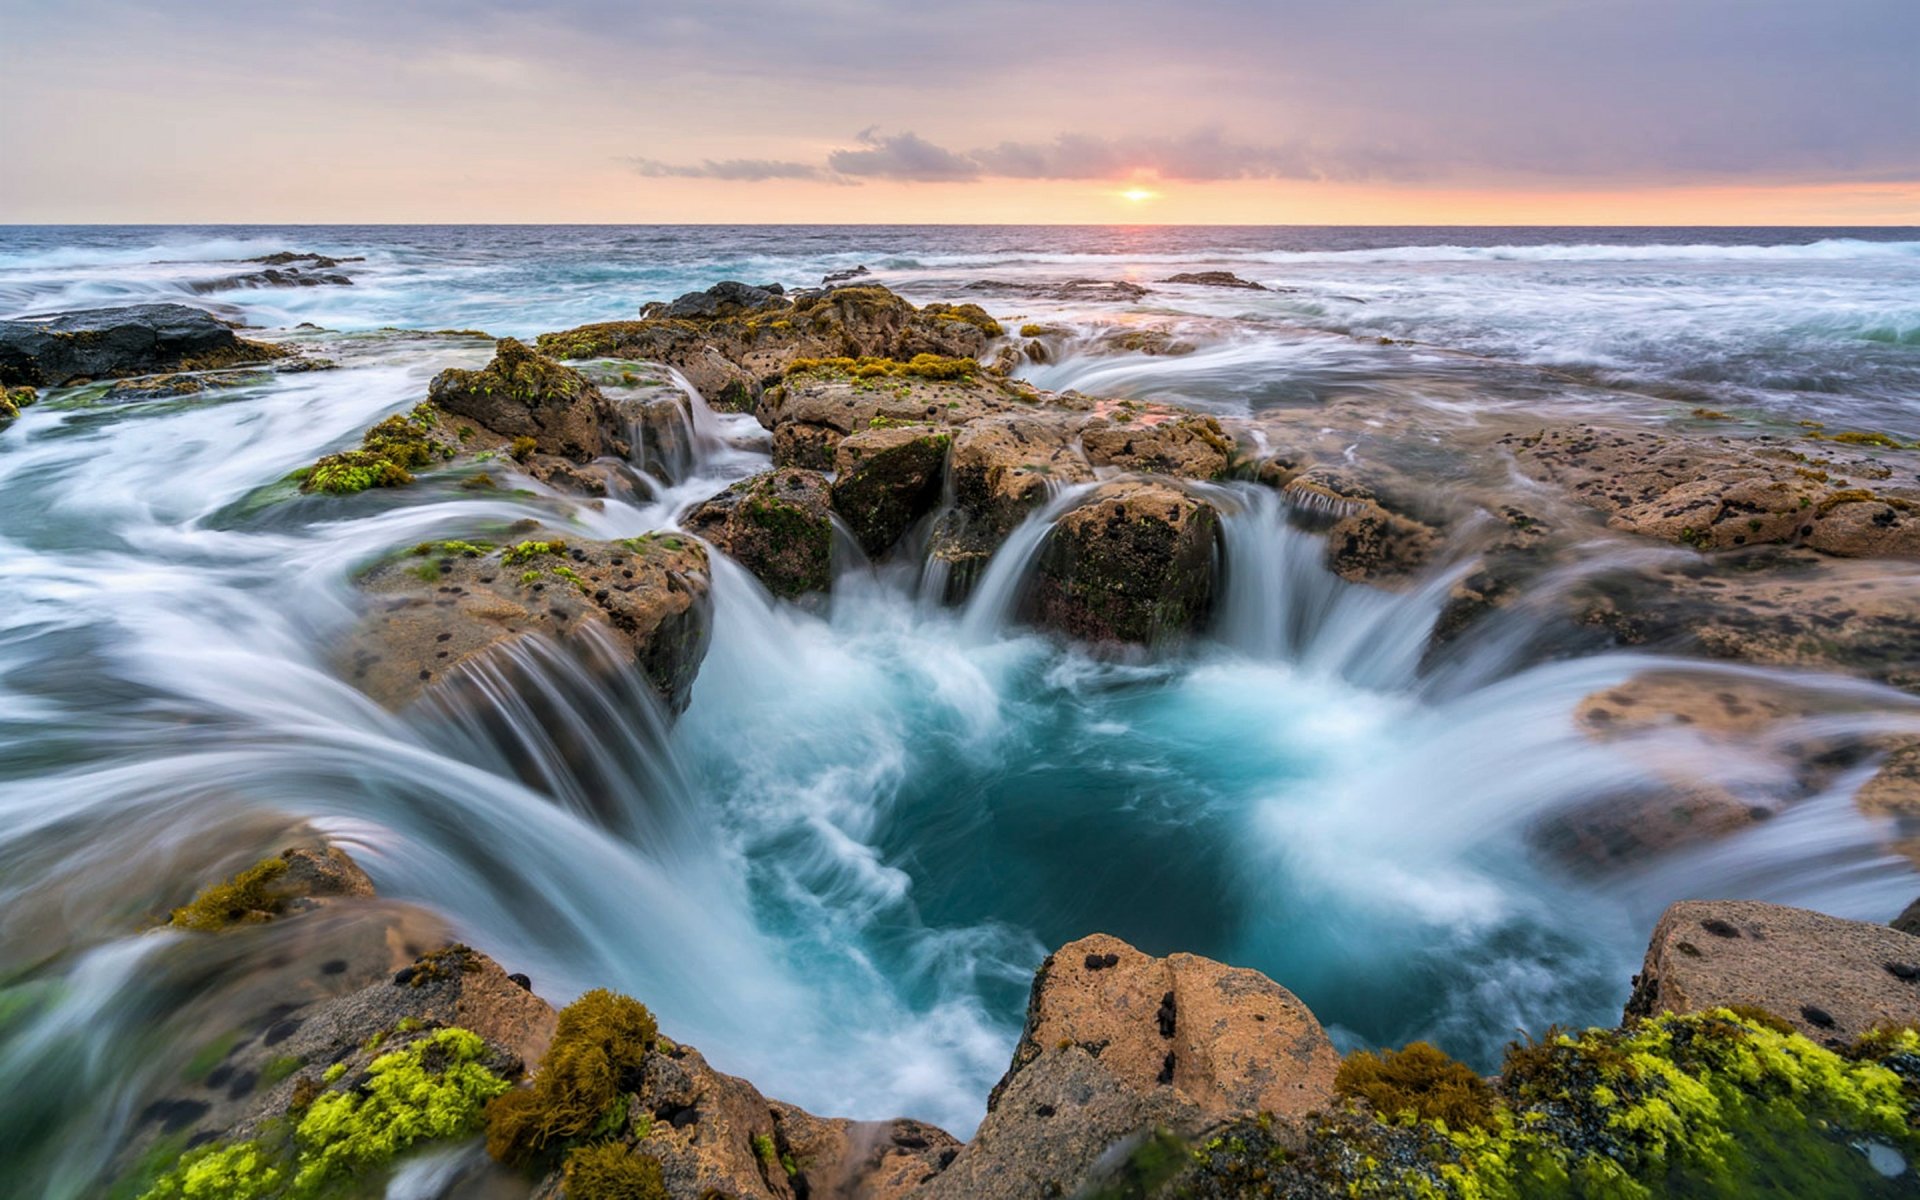 Sea Waves And Rock In Hawaiian Ocean